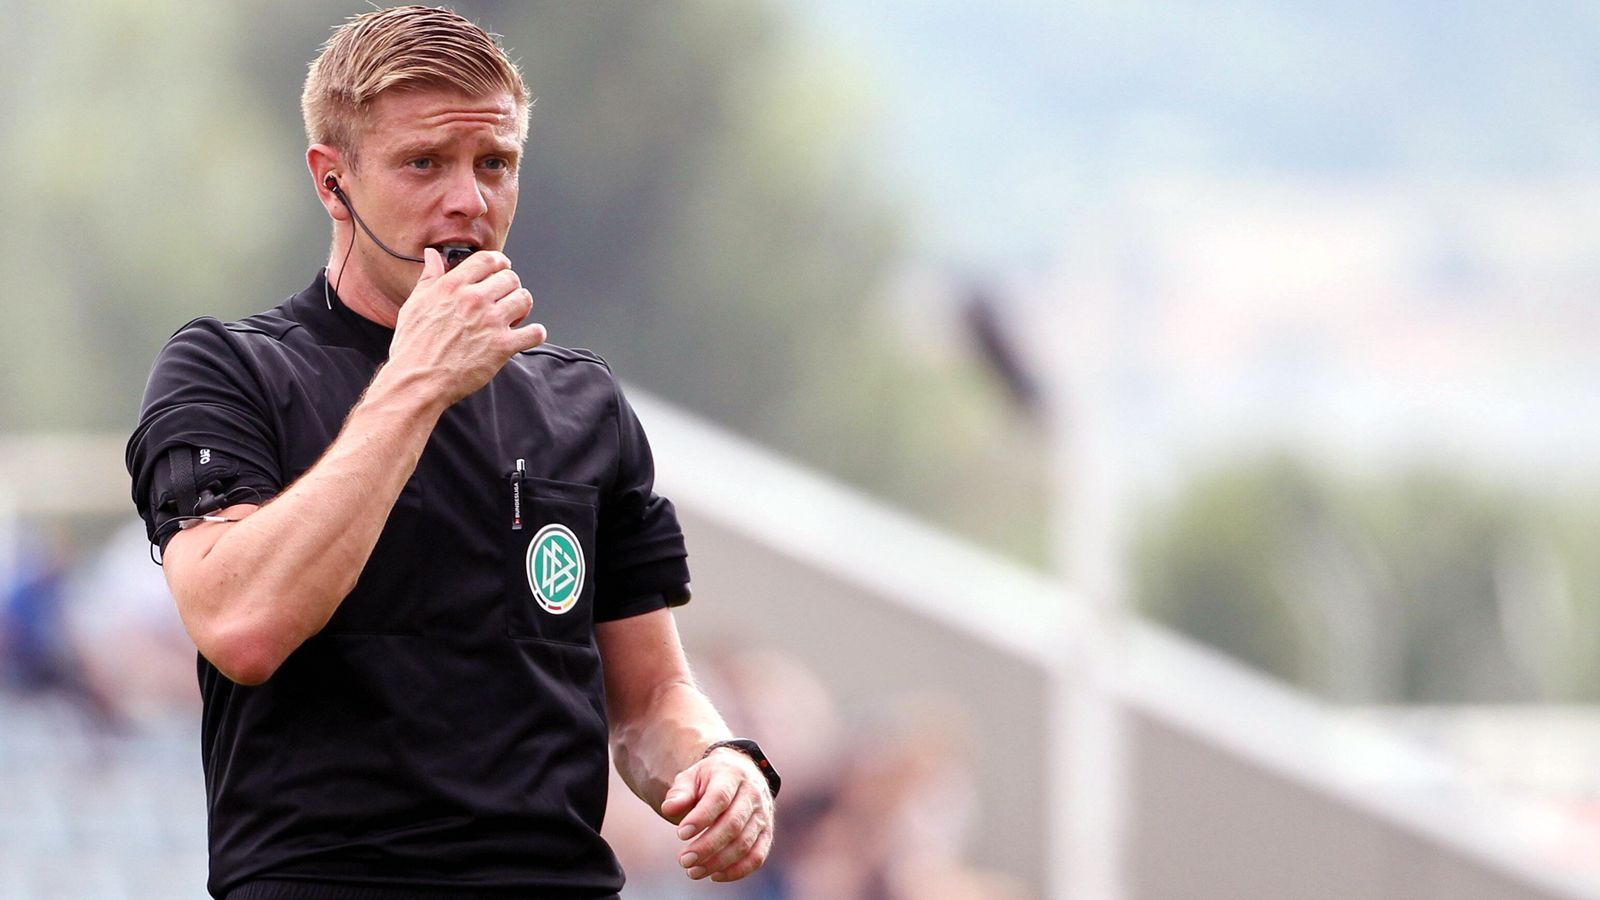 
                <strong>Robert Schröder (Hannover)</strong><br>
                Alter: 32 JahreBeruf: Angestellter beim DFBIn der Bundesliga seit: 2018
              